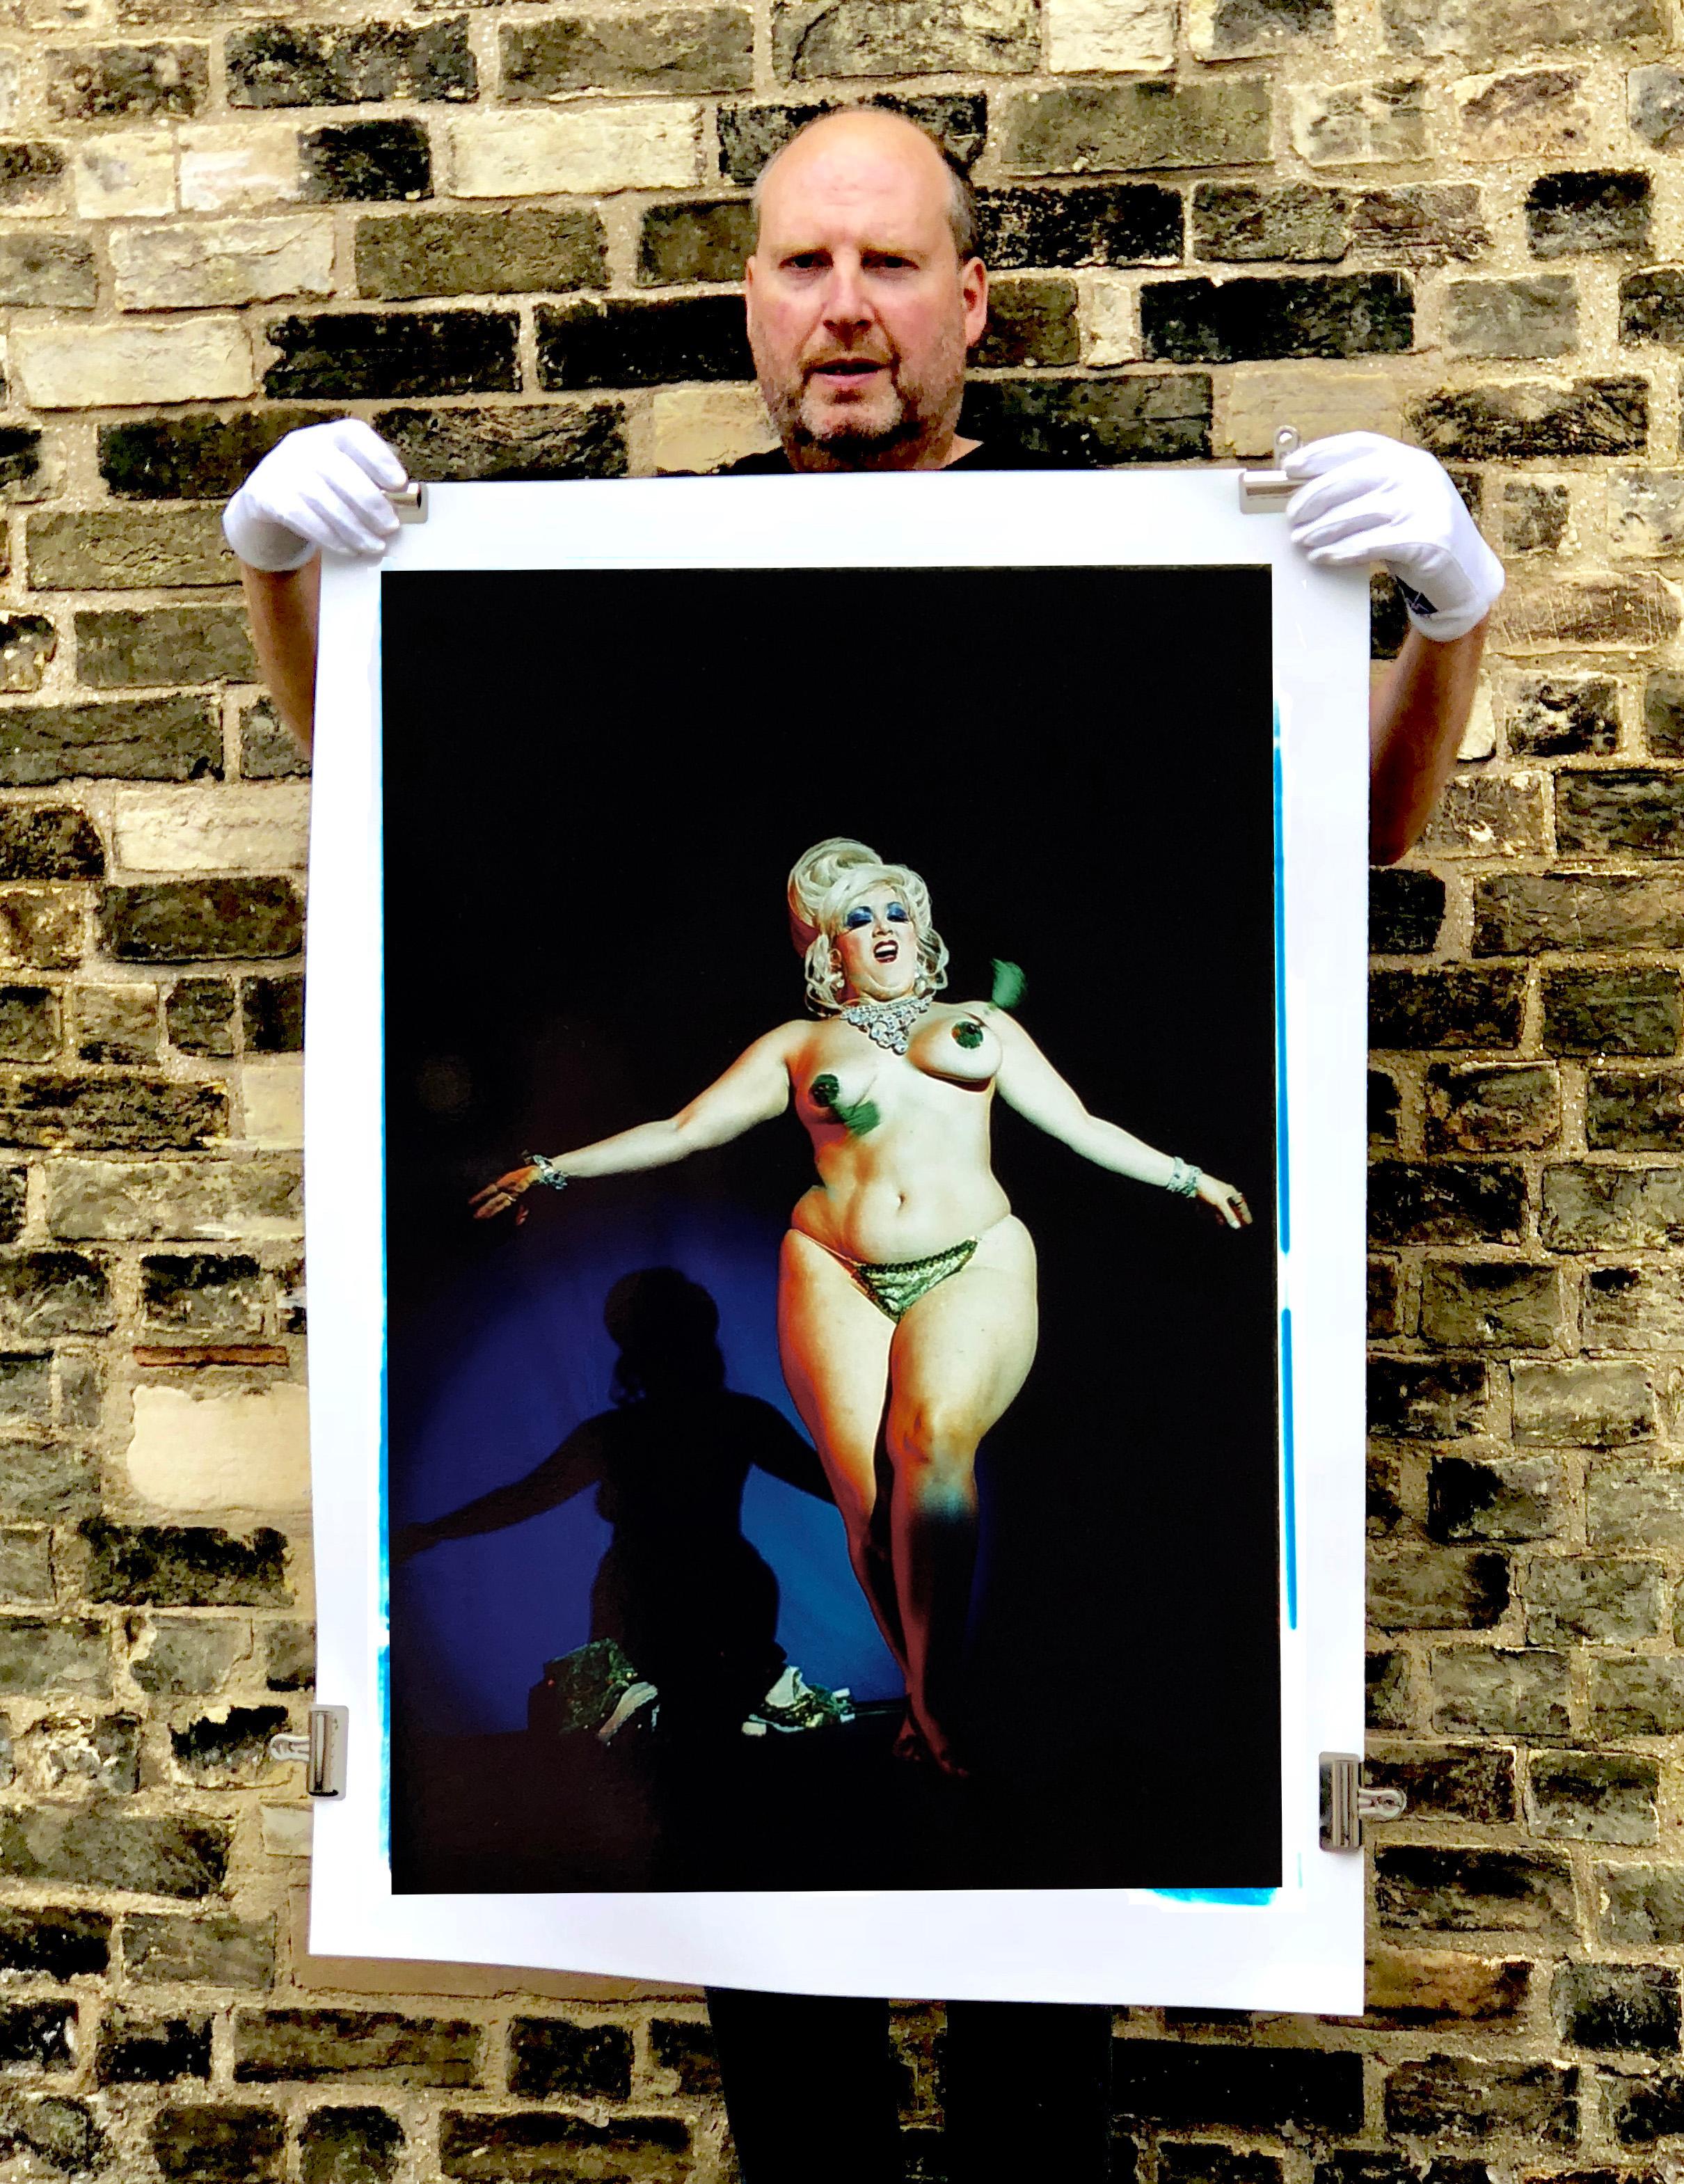 Richard Heeps wurde durch seine Burlesque-Fotografie bekannt, nachdem er 2003 Aufführungen in Großbritannien und Amerika fotografiert hatte. Bei vielen Gelegenheiten verbrachte er viel Zeit mit seinen Schützlingen und baute eine enge Beziehung zu